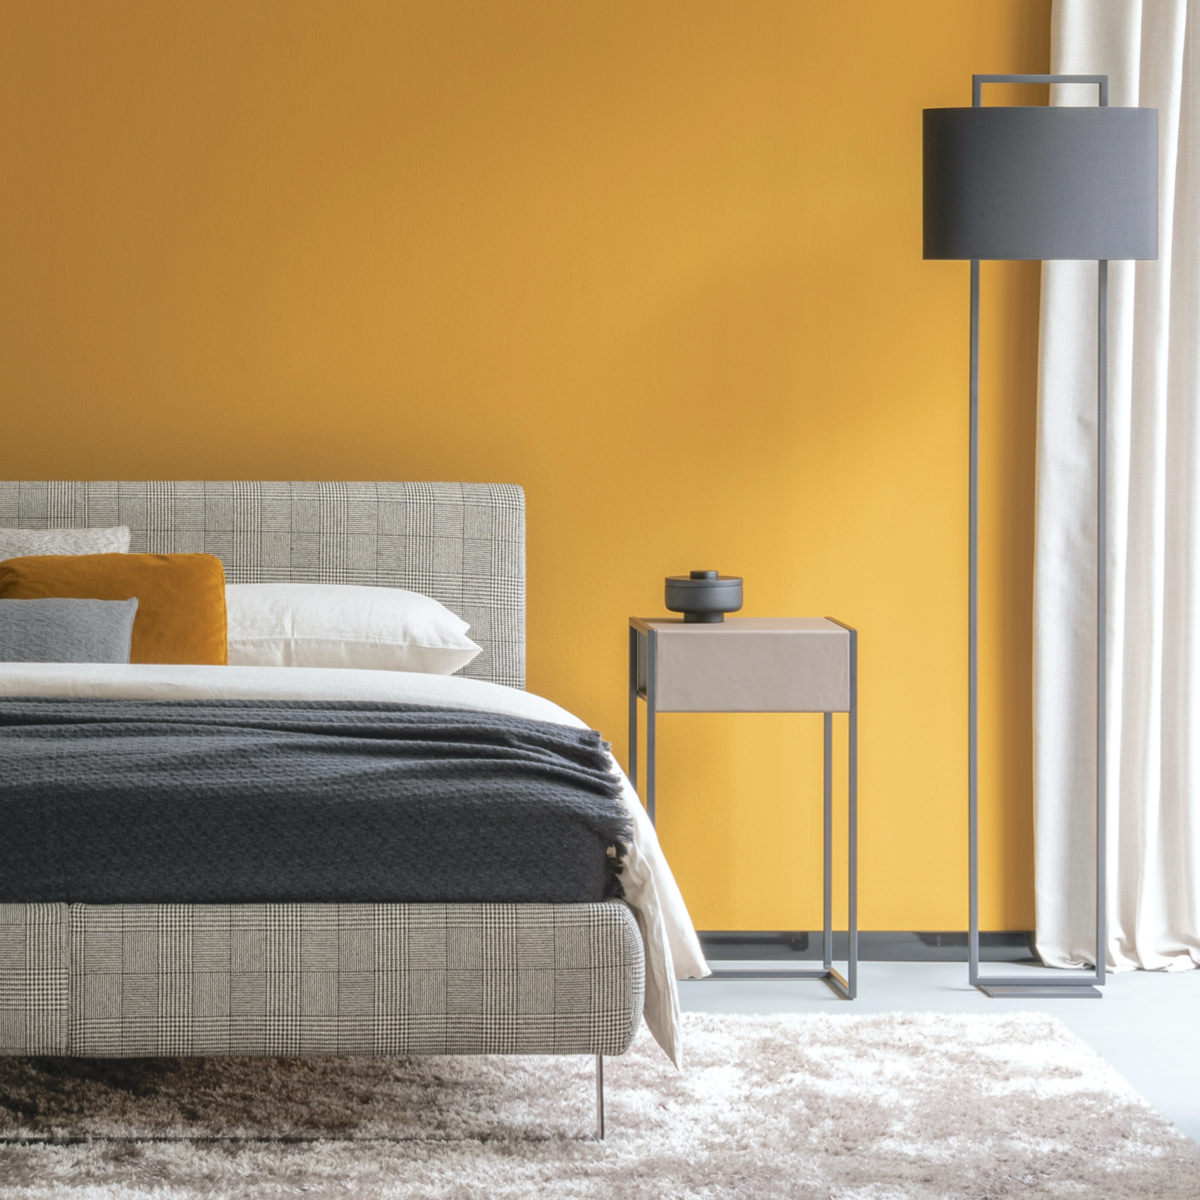 contemporary bedroom designs